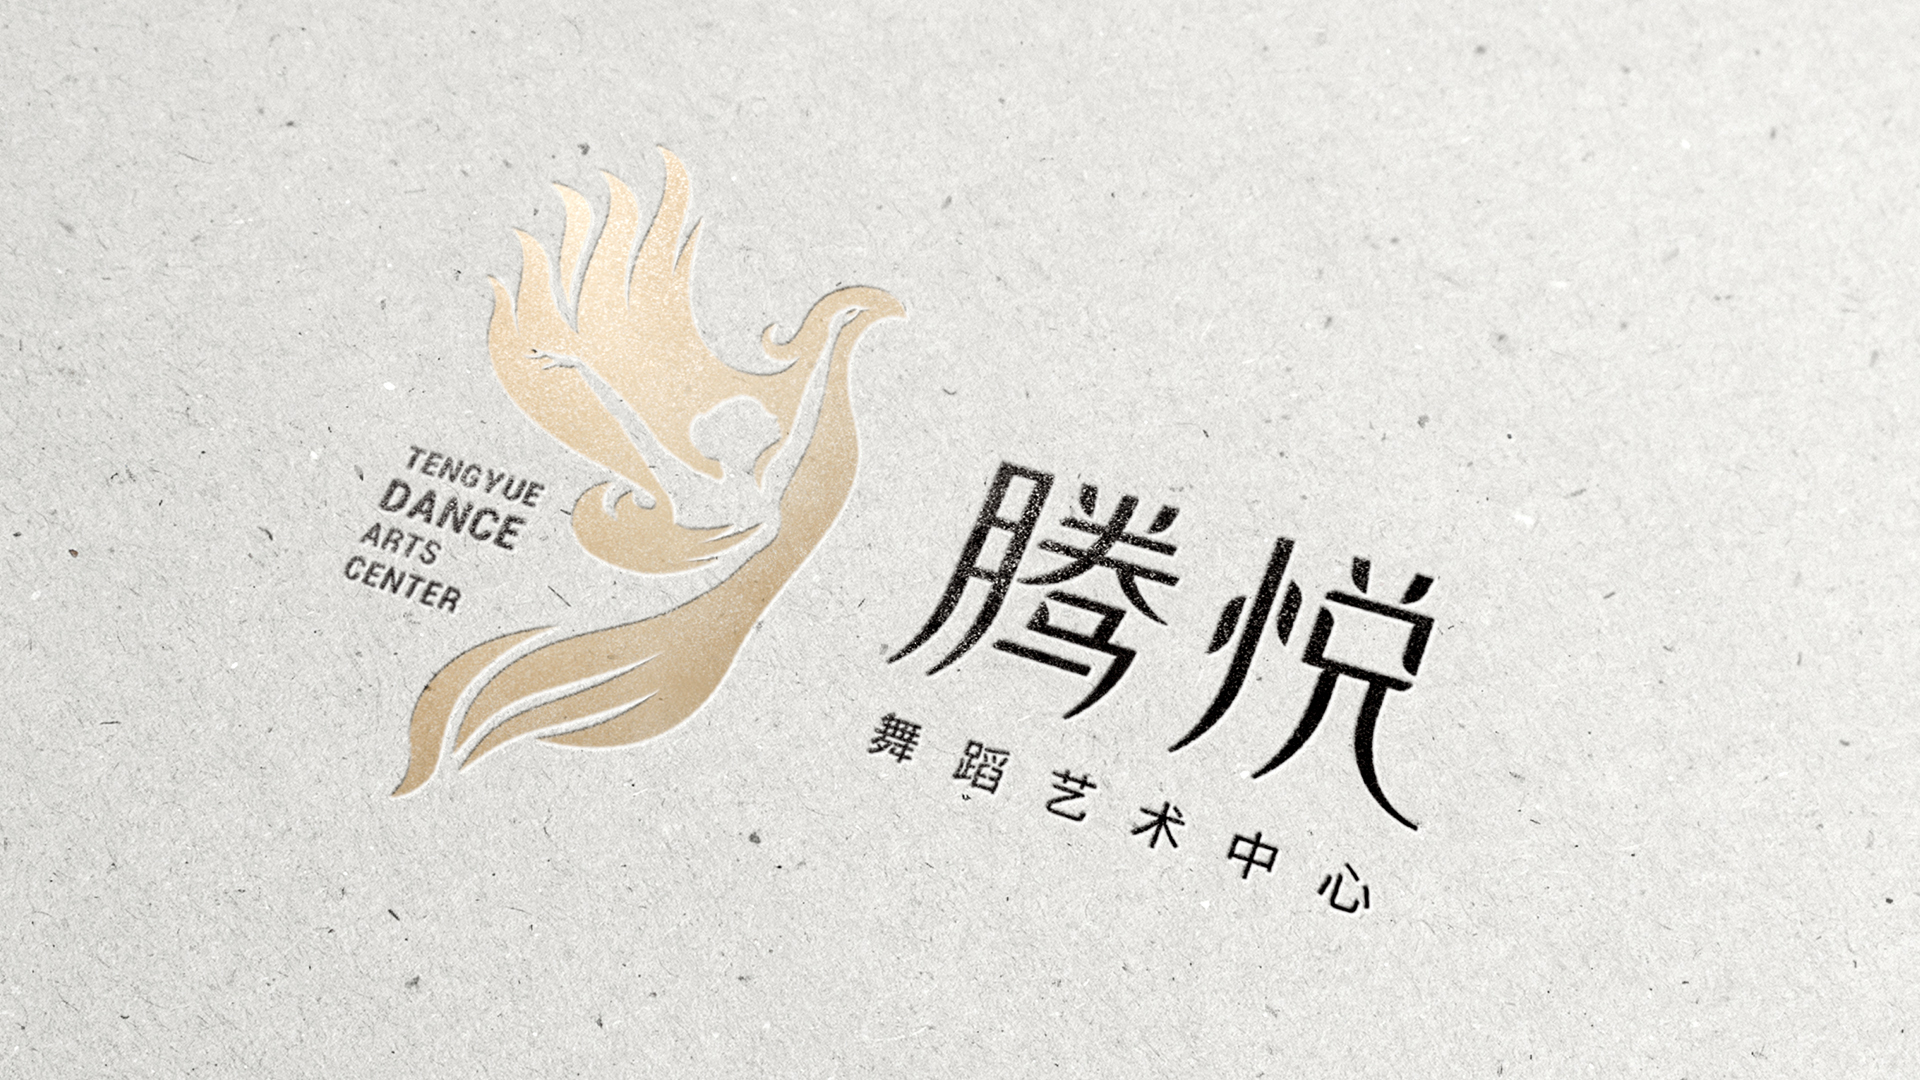 腾悦舞蹈艺术logo设计